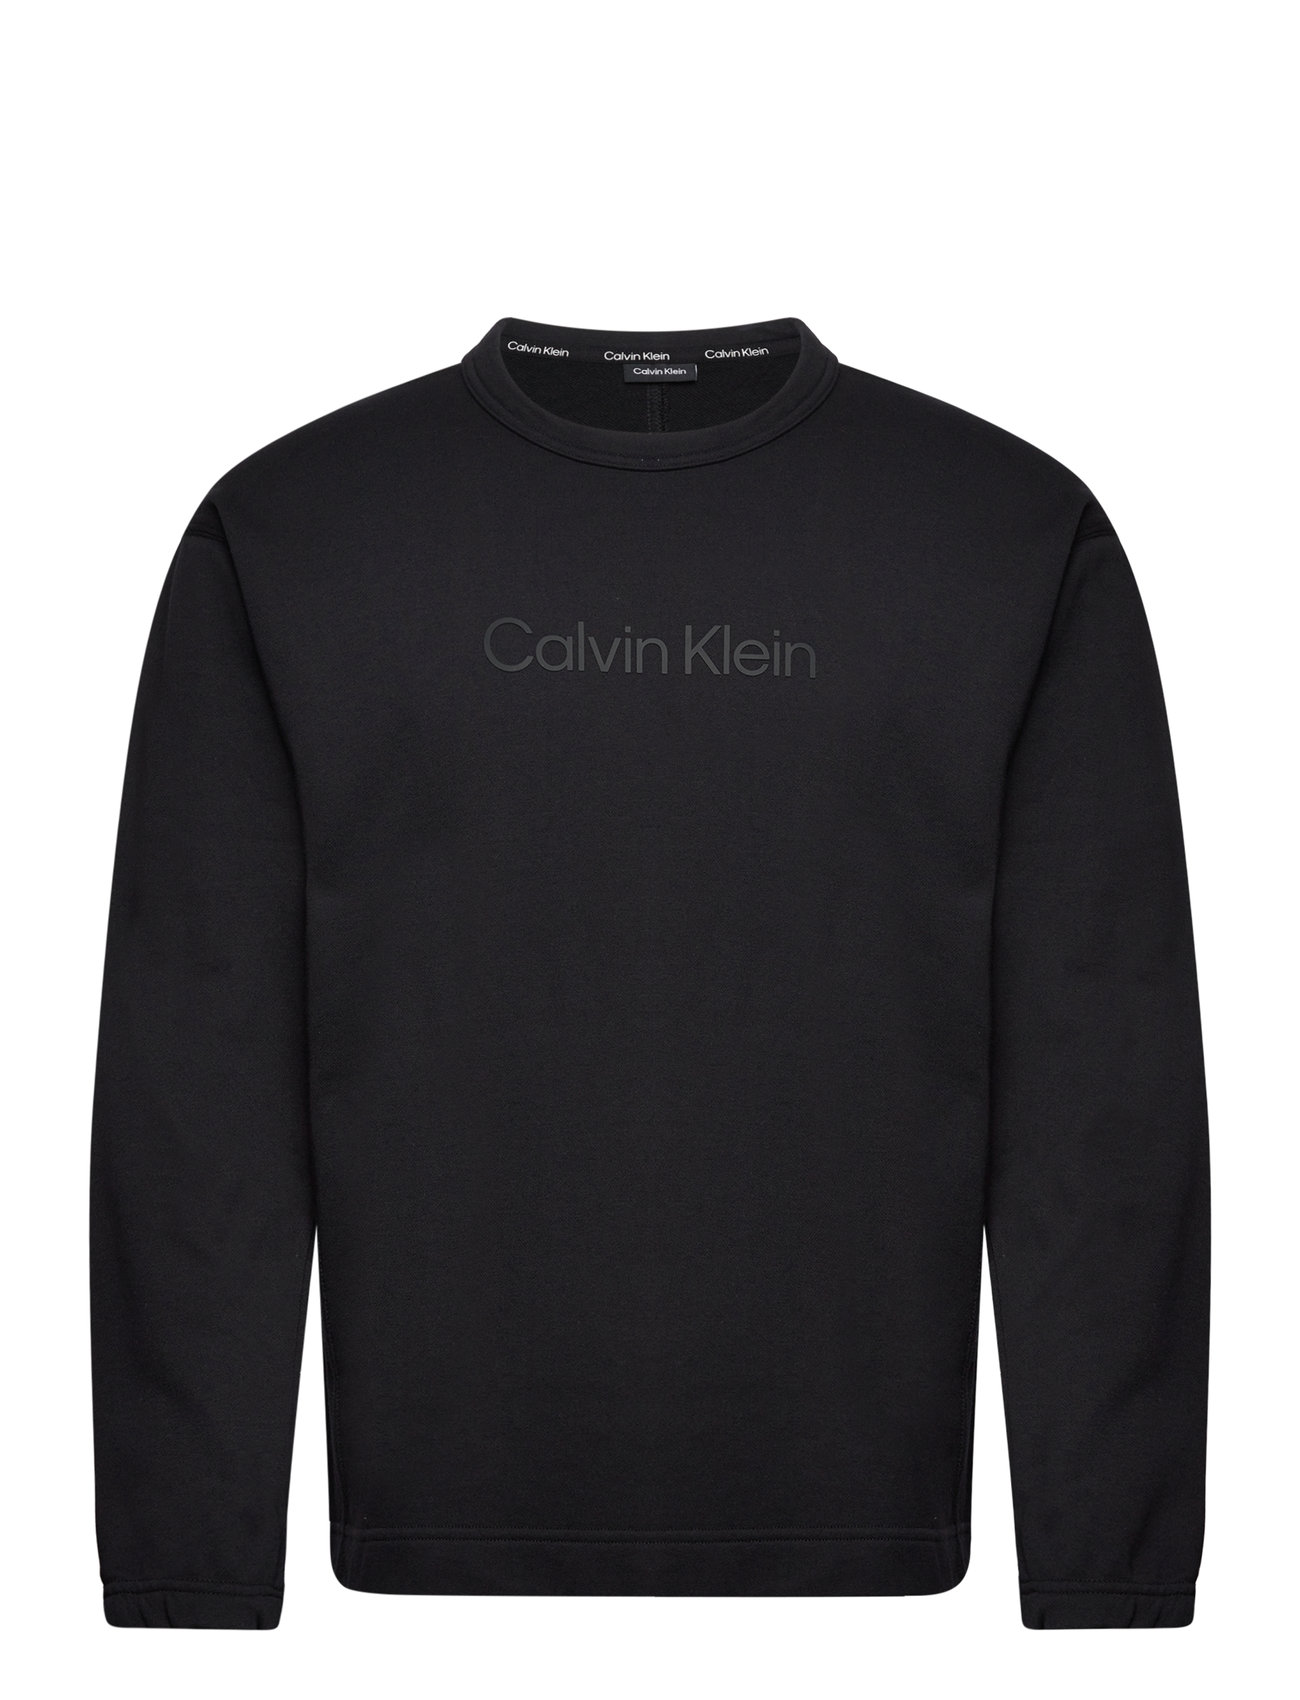 Calvin Klein Performance – kapuzenpullover Booztlet & einkaufen Pullover – bei - Pw sweatshirts